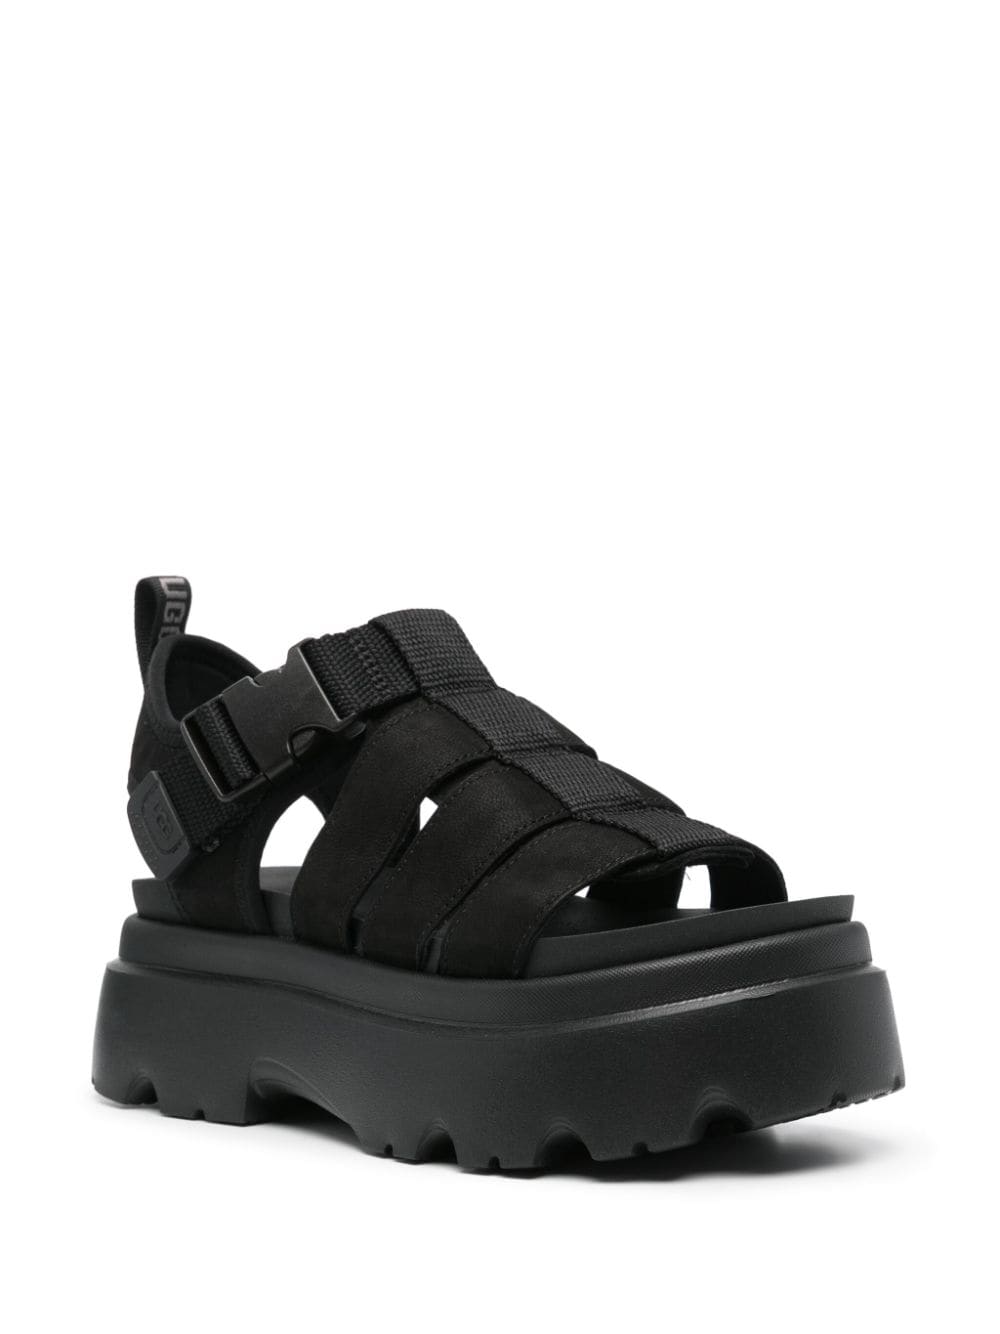 UGG Cora leather sandals - Zwart